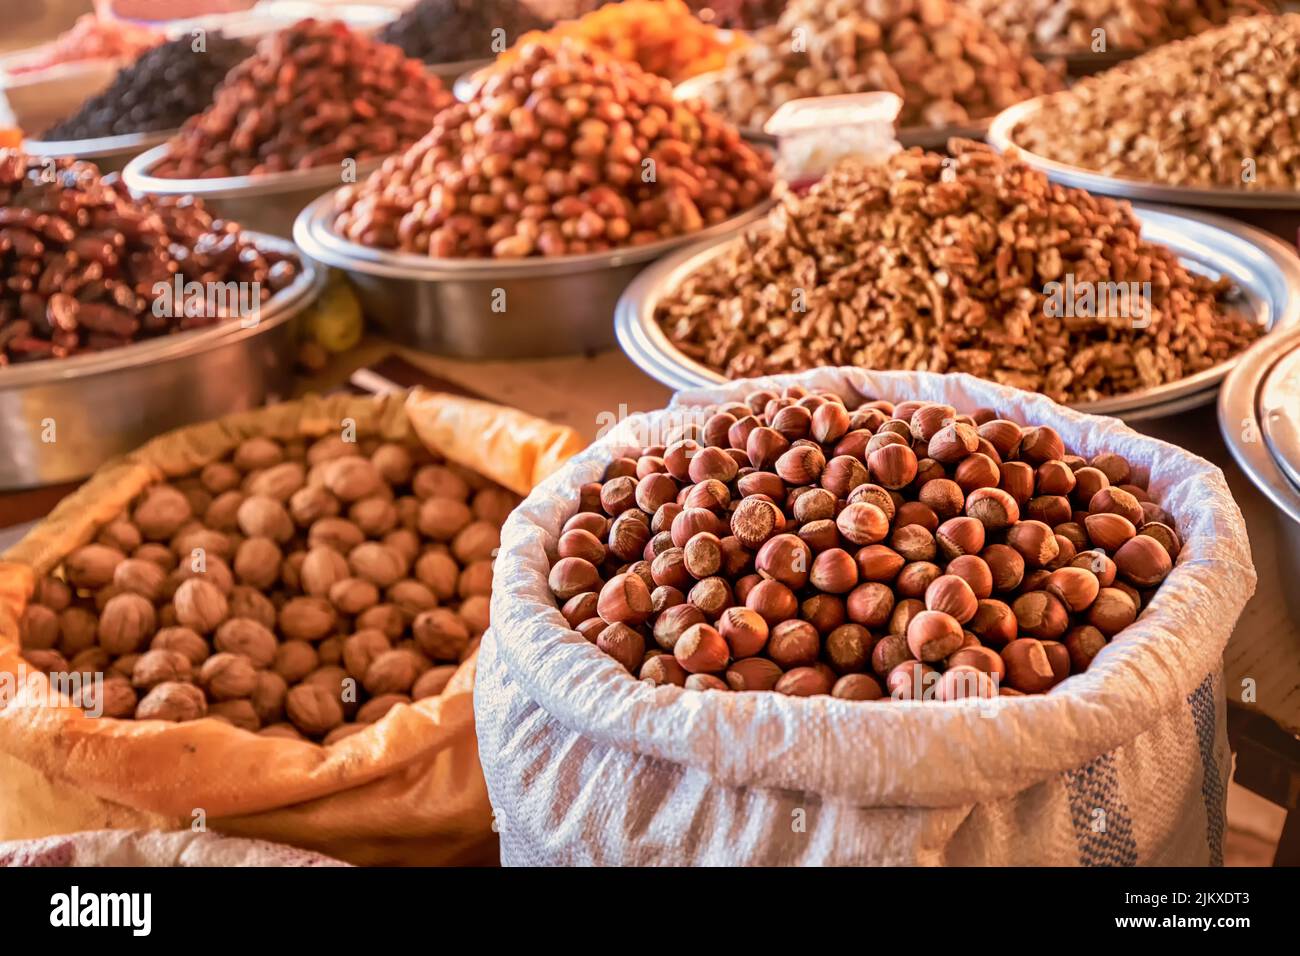 noisettes en carapace, noix et autres noix et fruits secs et raisins secs sur le comptoir des agriculteurs au marché local ou au bazar oriental Banque D'Images